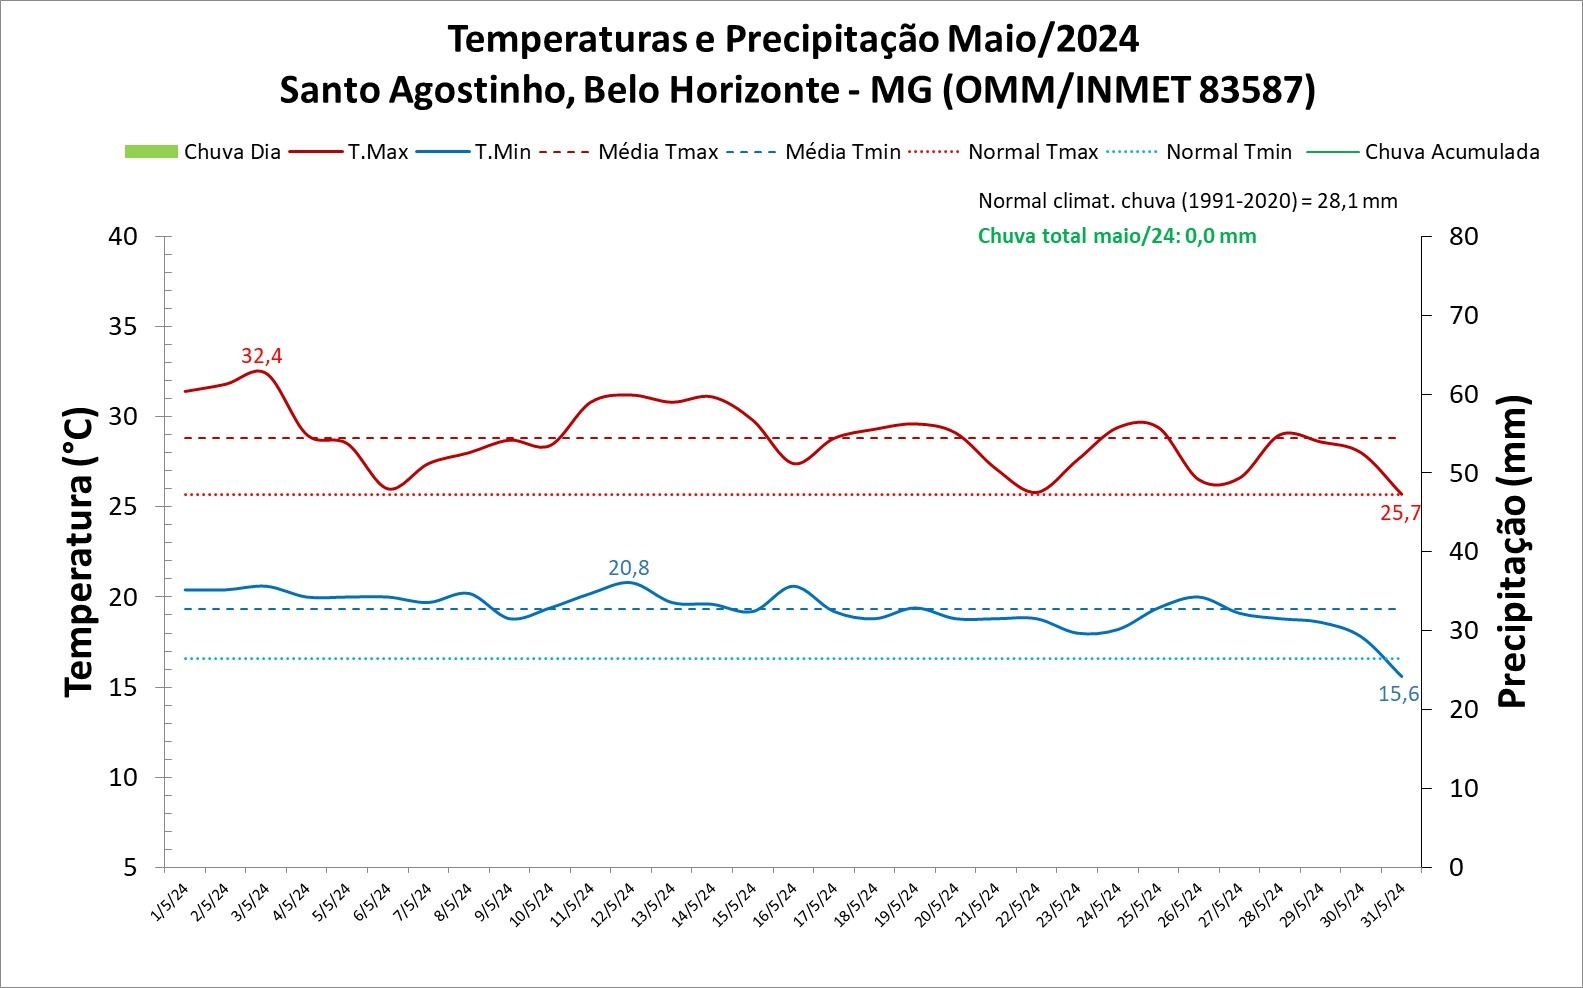 Balanço: Belo Horizonte (MG) não teve registro de chuva em maio/2024